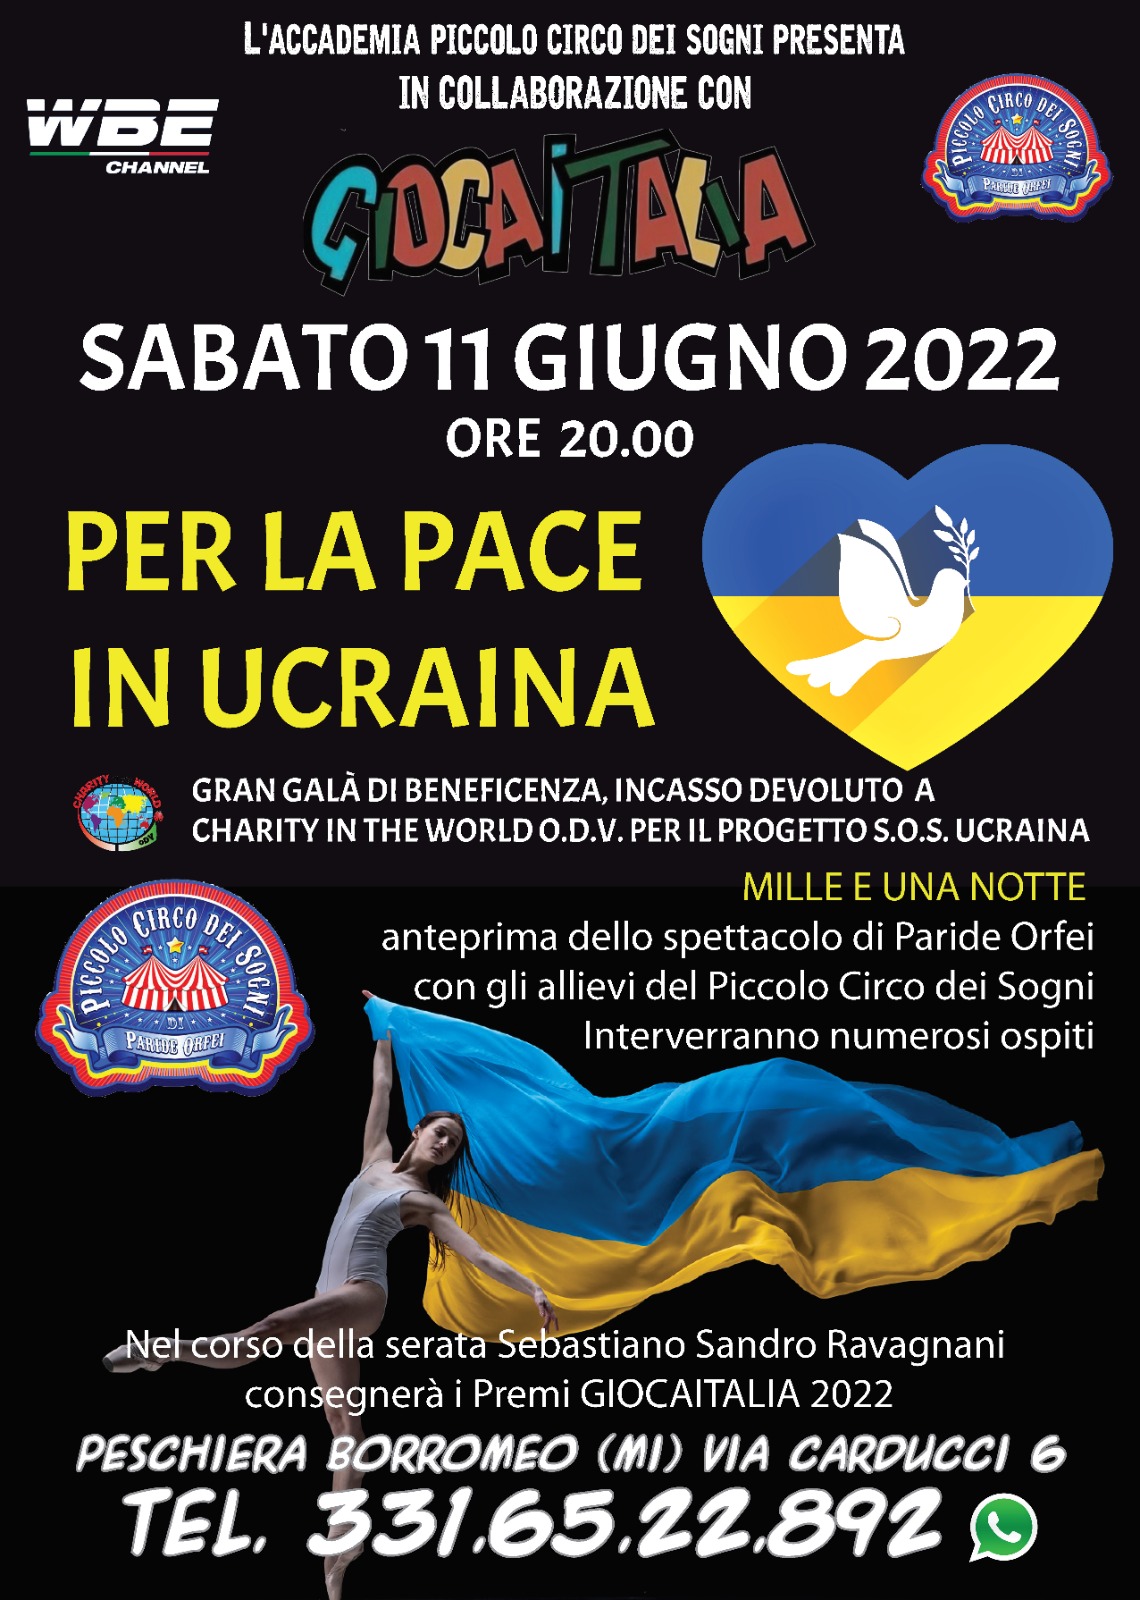 Al momento stai visualizzando Gran galà di beneficenza “Per la pace in Ucraina” sabato 11 giugno al Piccolo Circo dei Sogni di Peschiera Borromeo (Milano)